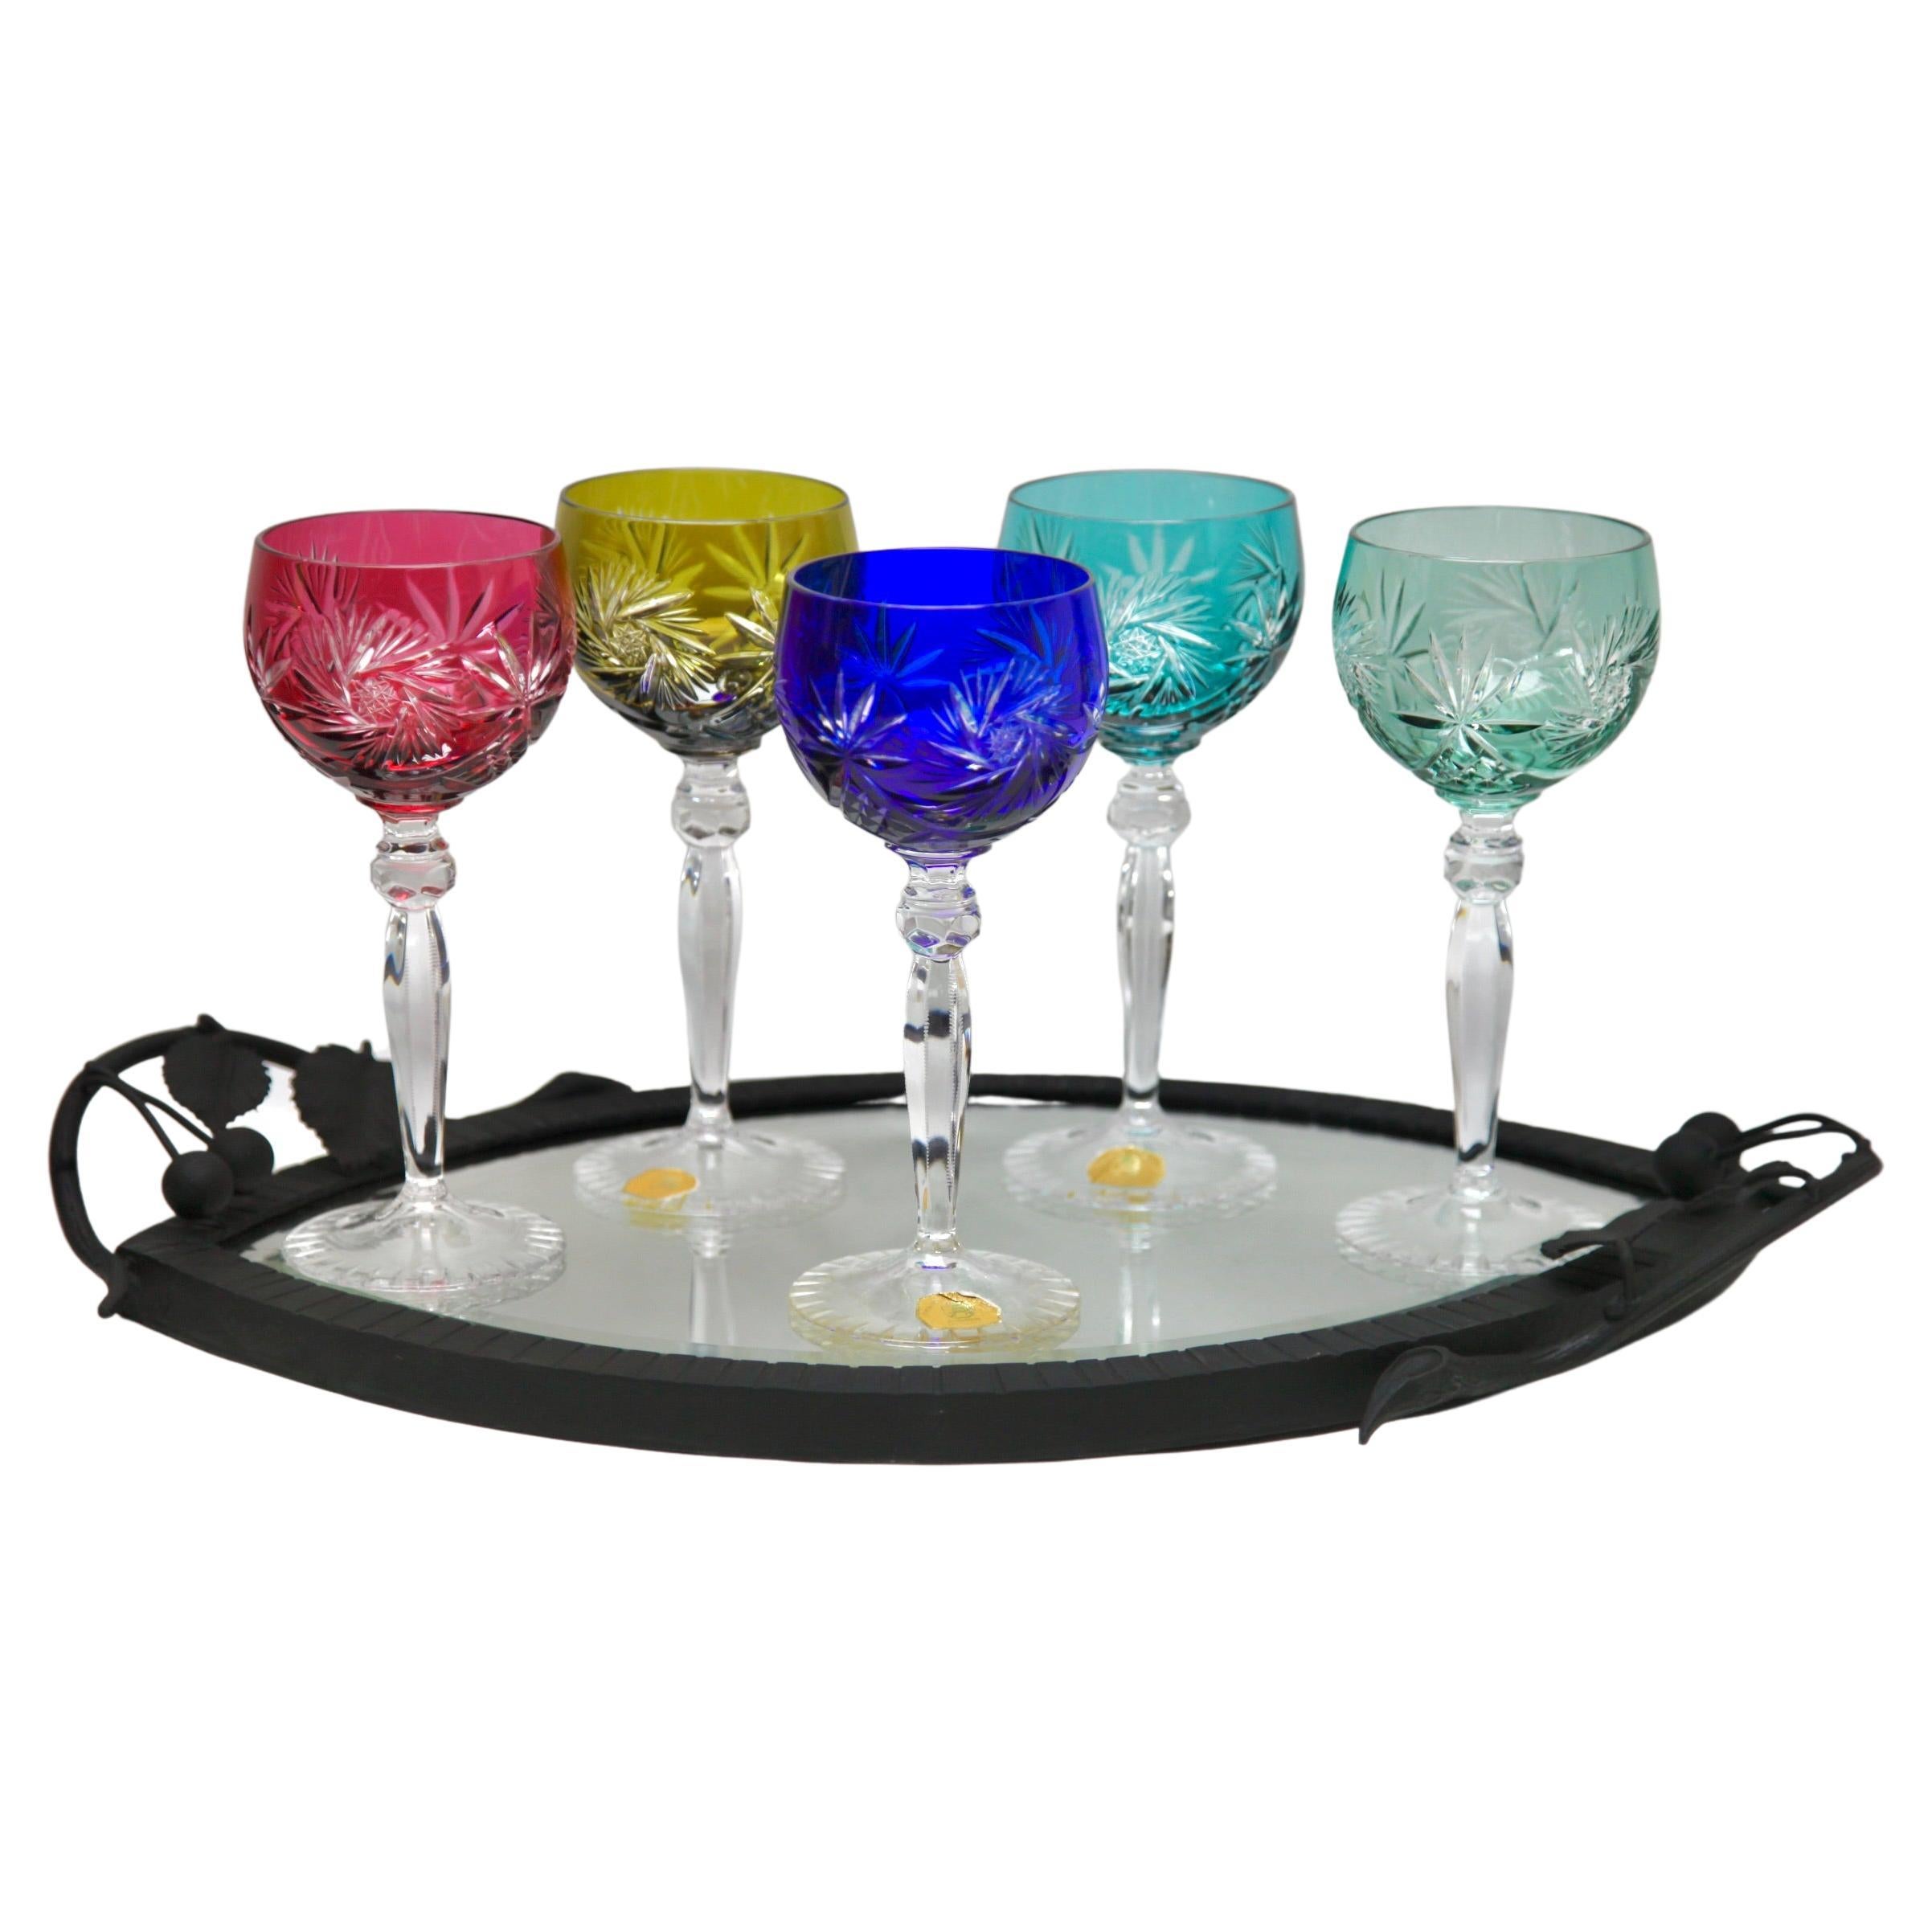 Ensemble de 5 verres à pied en cristal avec superposition de couleurs, taillés en clair et plateau en fer forgé